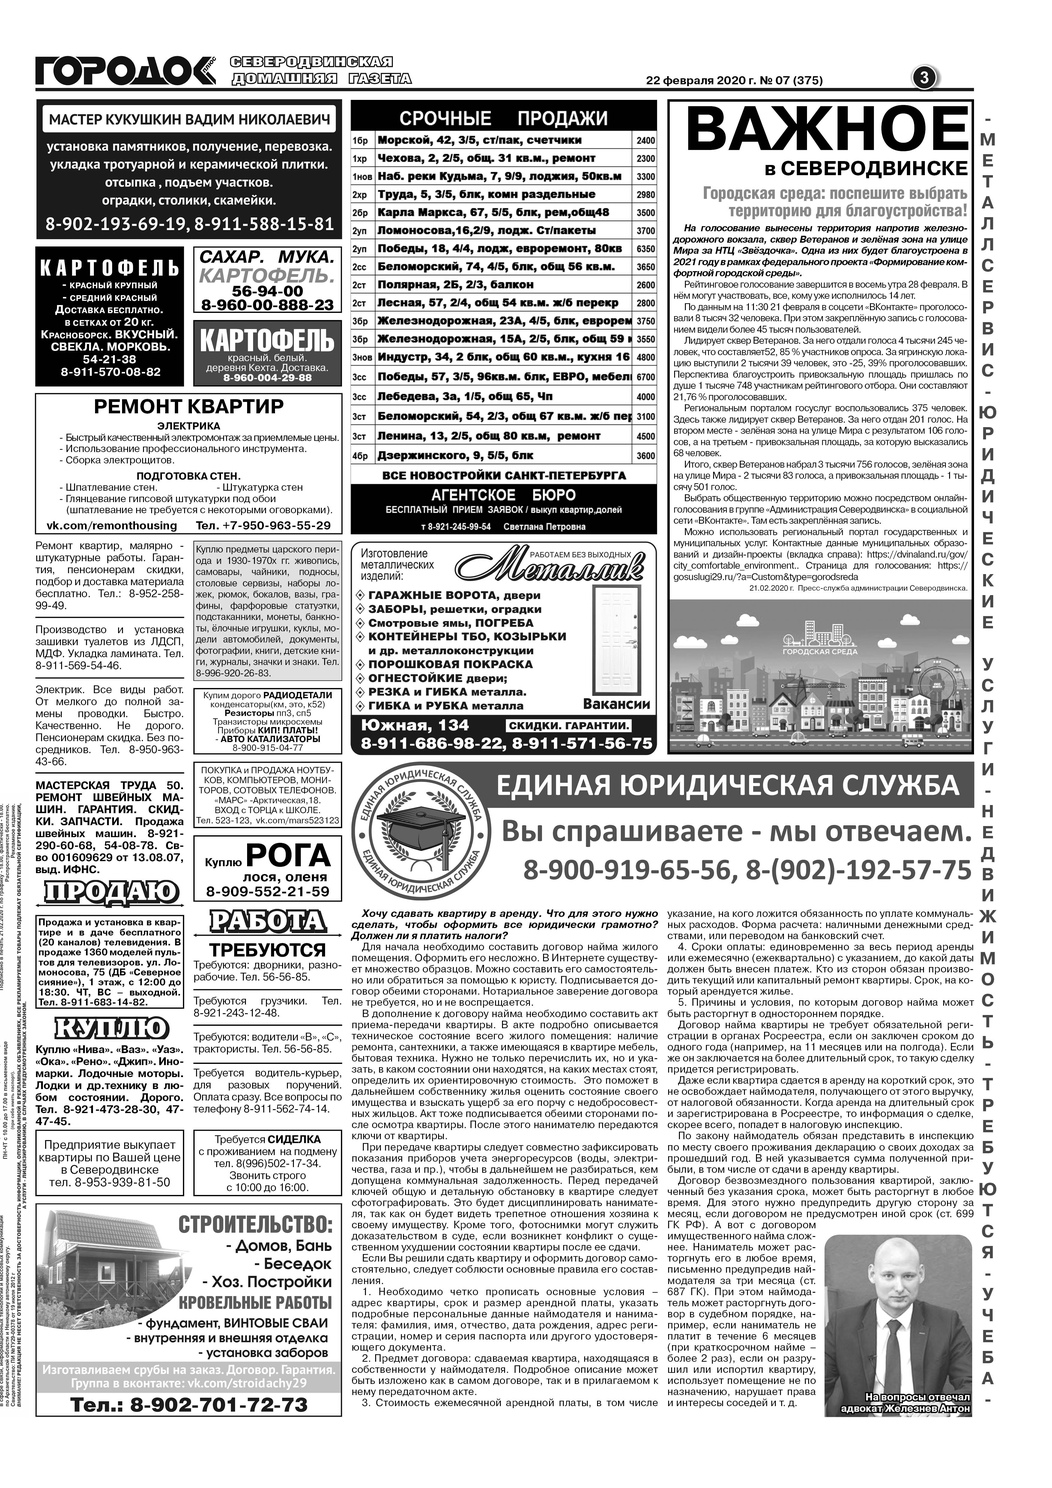 Городок плюс, выпуск номер 7 от 22 февраля 2020 года, страница 3.